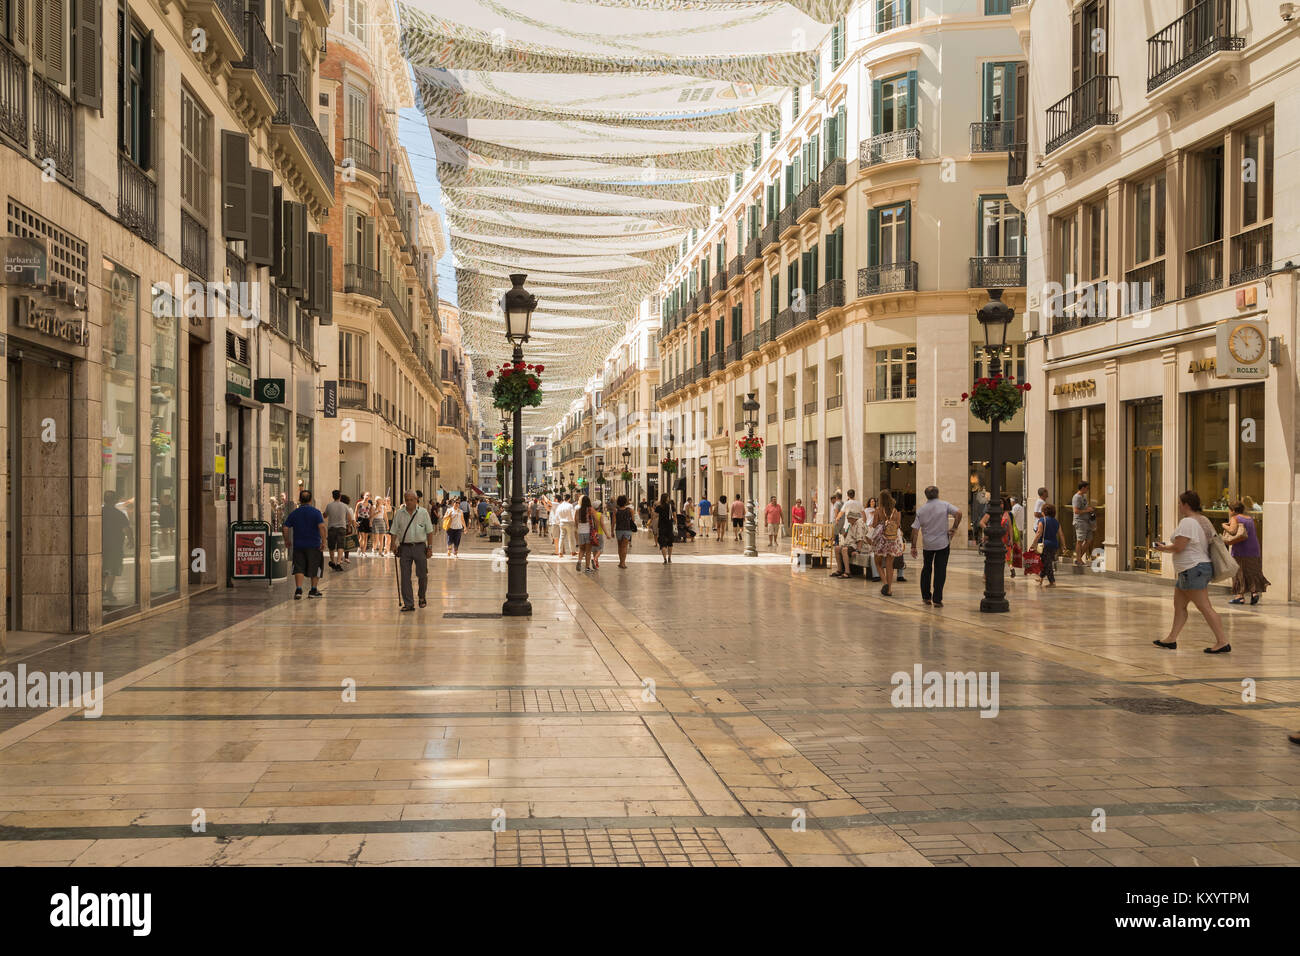 Una imagen de una de las principales calles comerciales en Málaga, España. La Calle Larios ofrece muchos tipos de tiendas catering para locales y turistas. Calle La Foto de stock